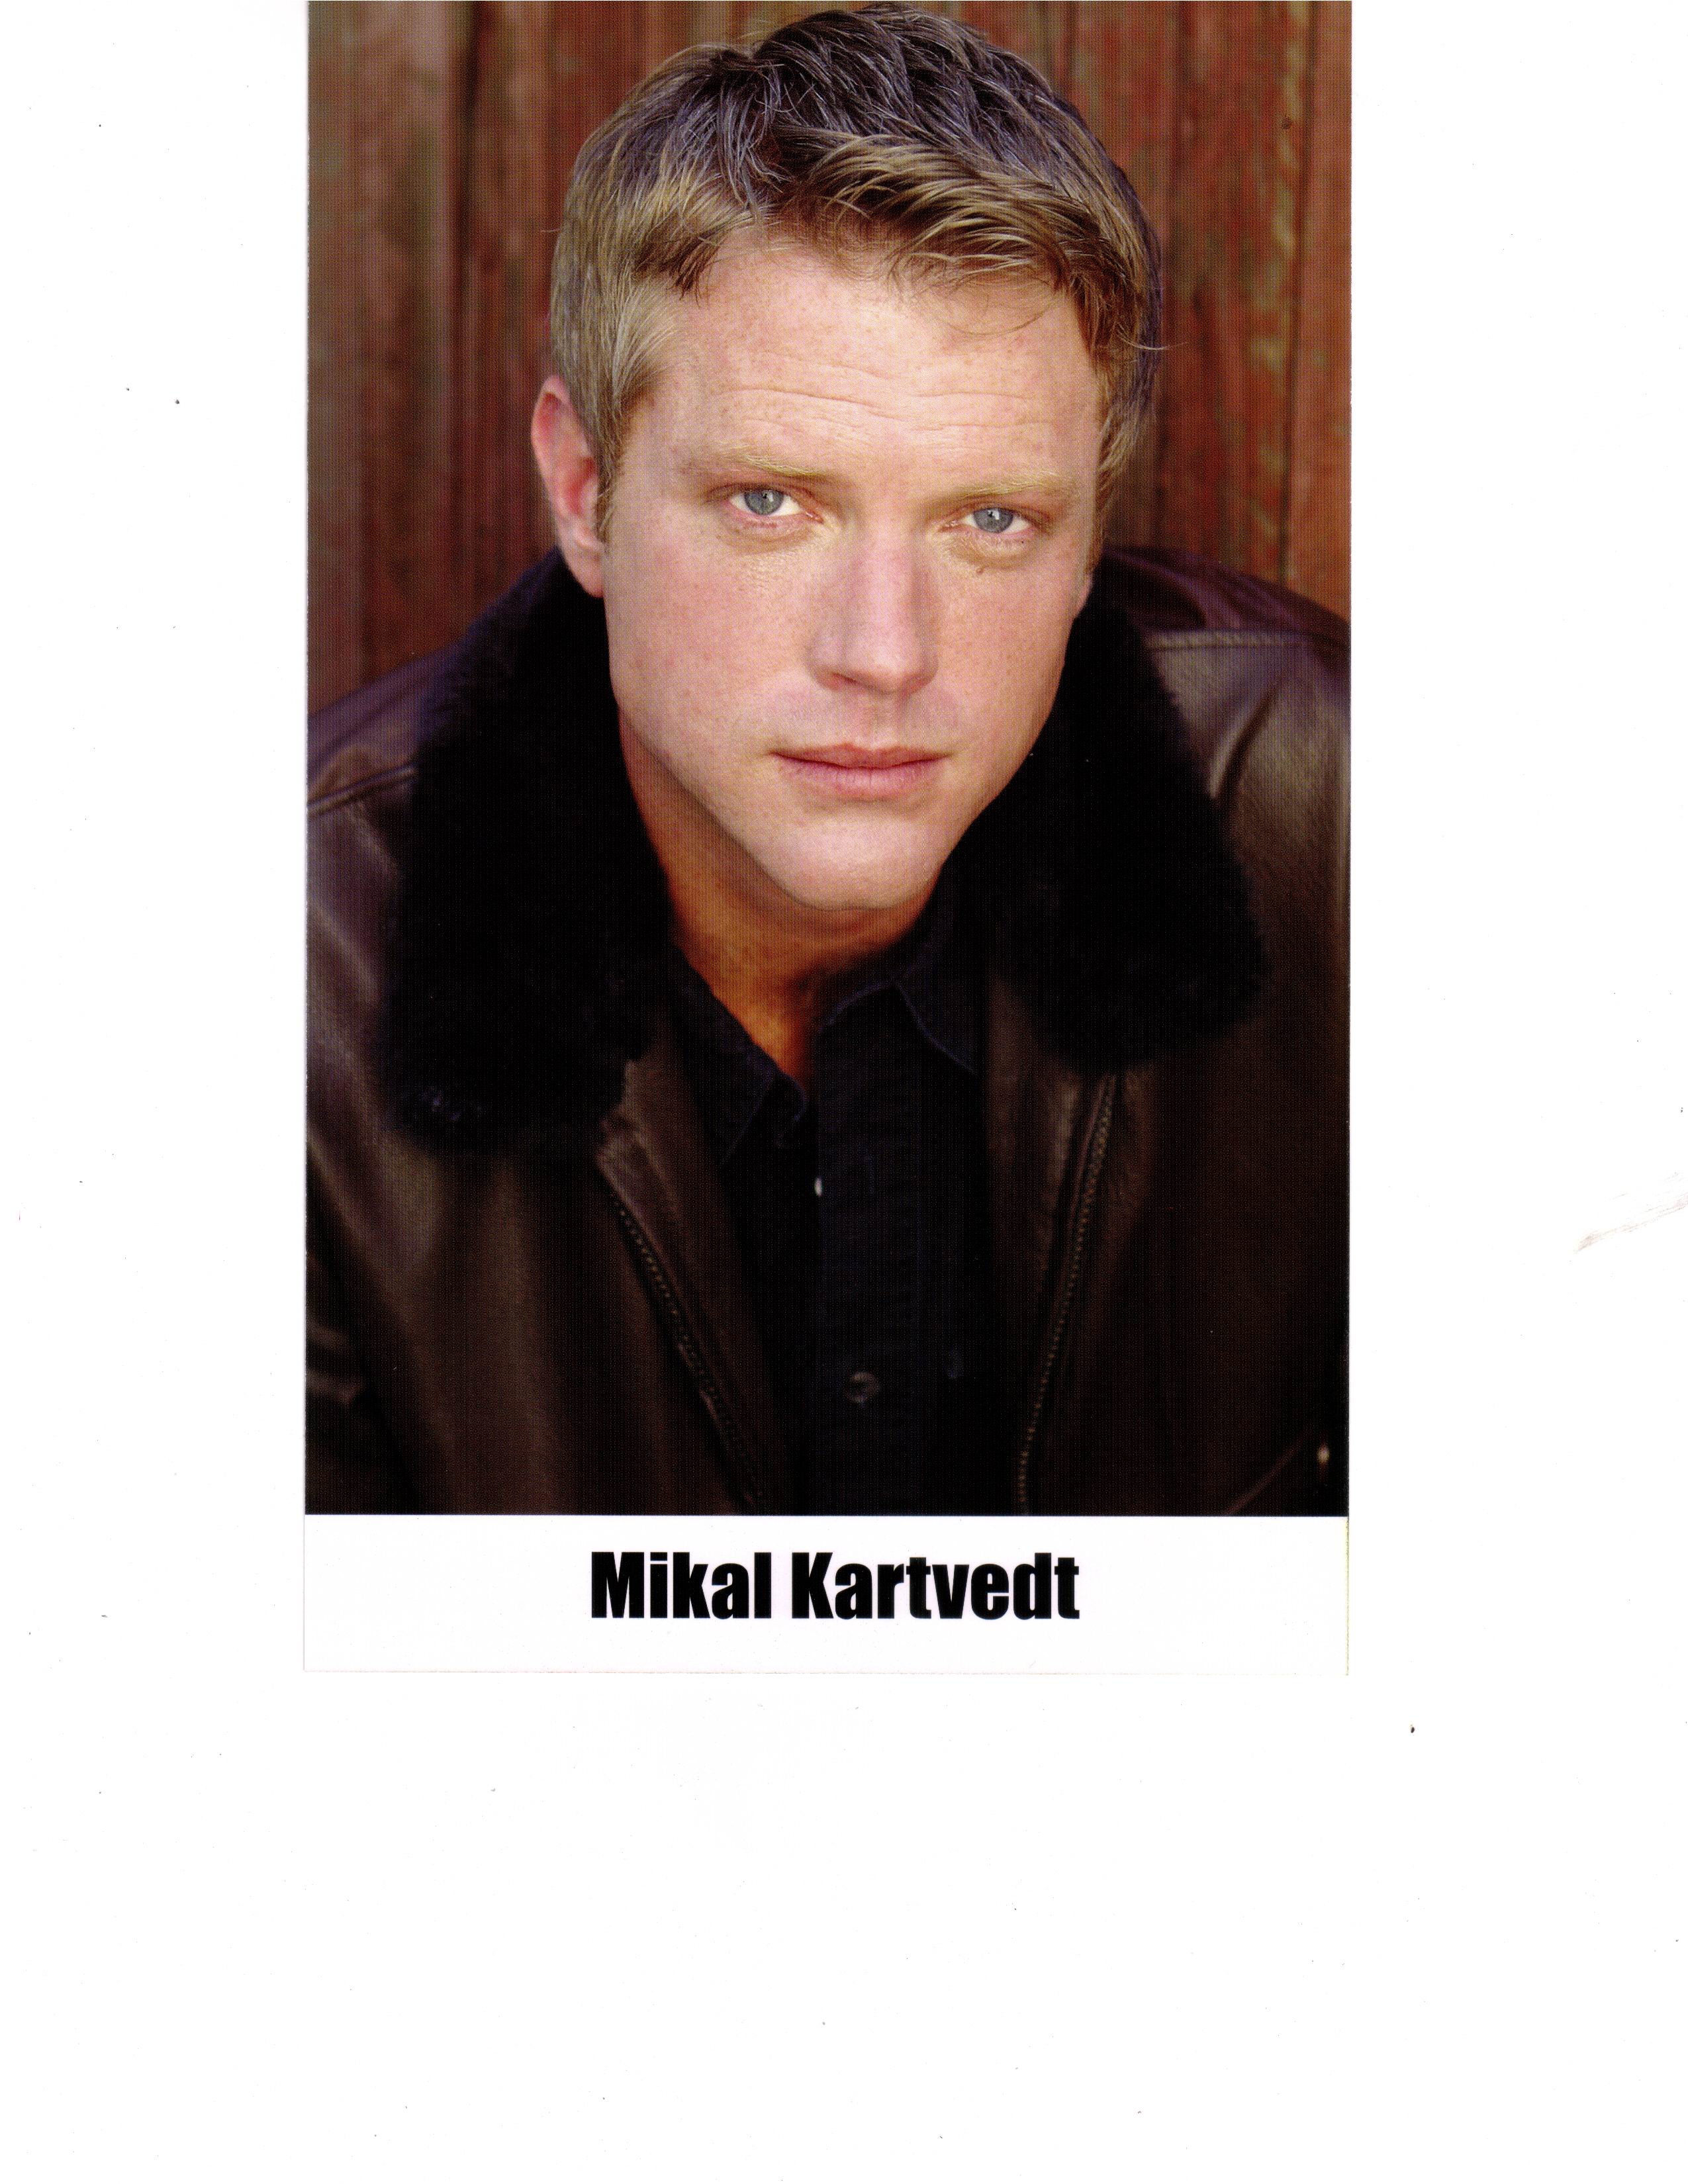 Mikal Kartvedt